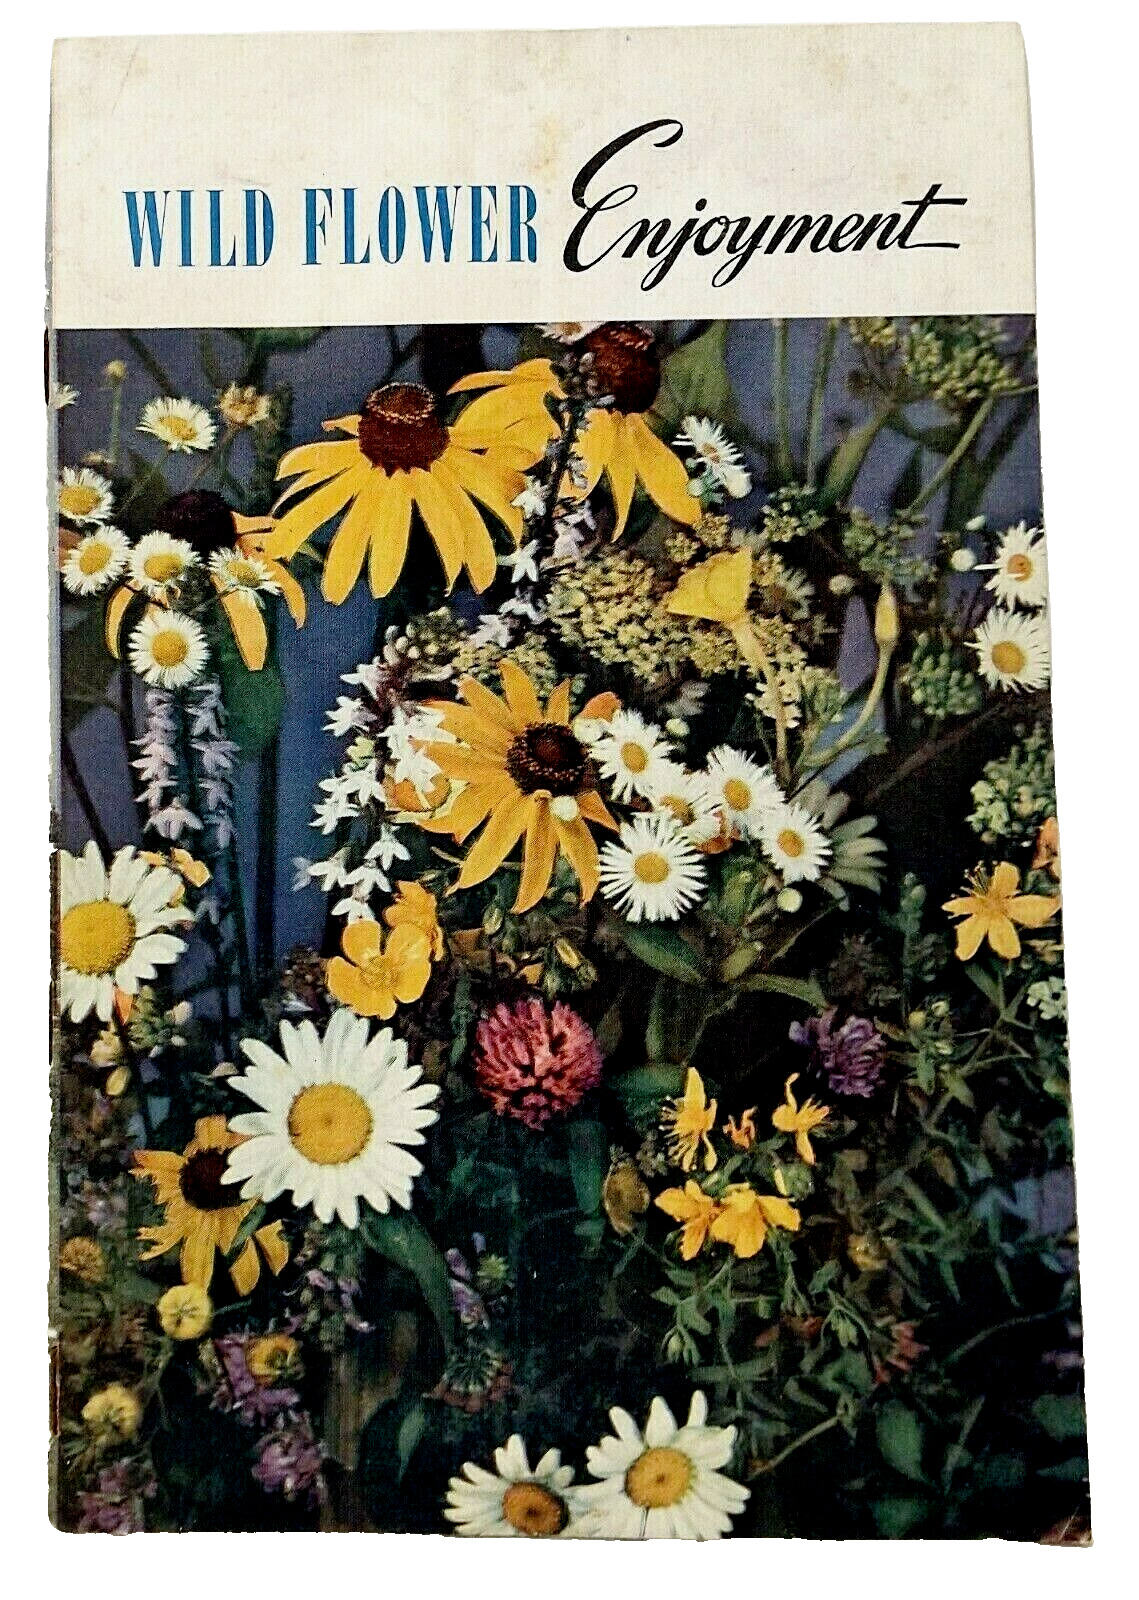 Wild Flower Enjoyment Booklet Salada Tea Company Advertisement 1945